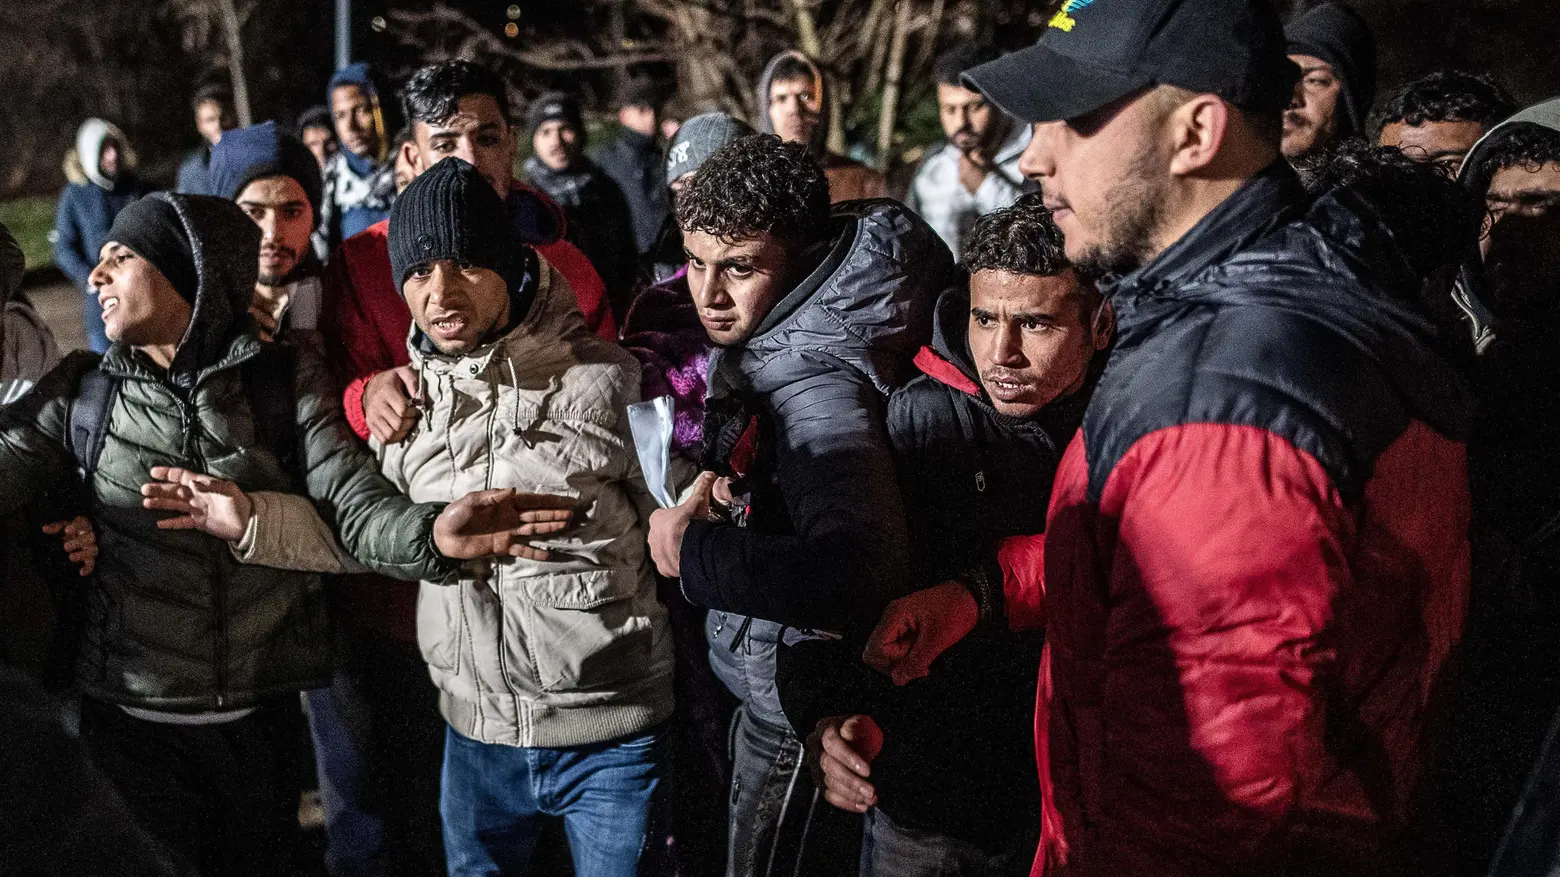 Migranti, l’ultimatum del giudice  "Domanda di asilo entro 3 giorni"  Si rischia una valanga di ricorsi